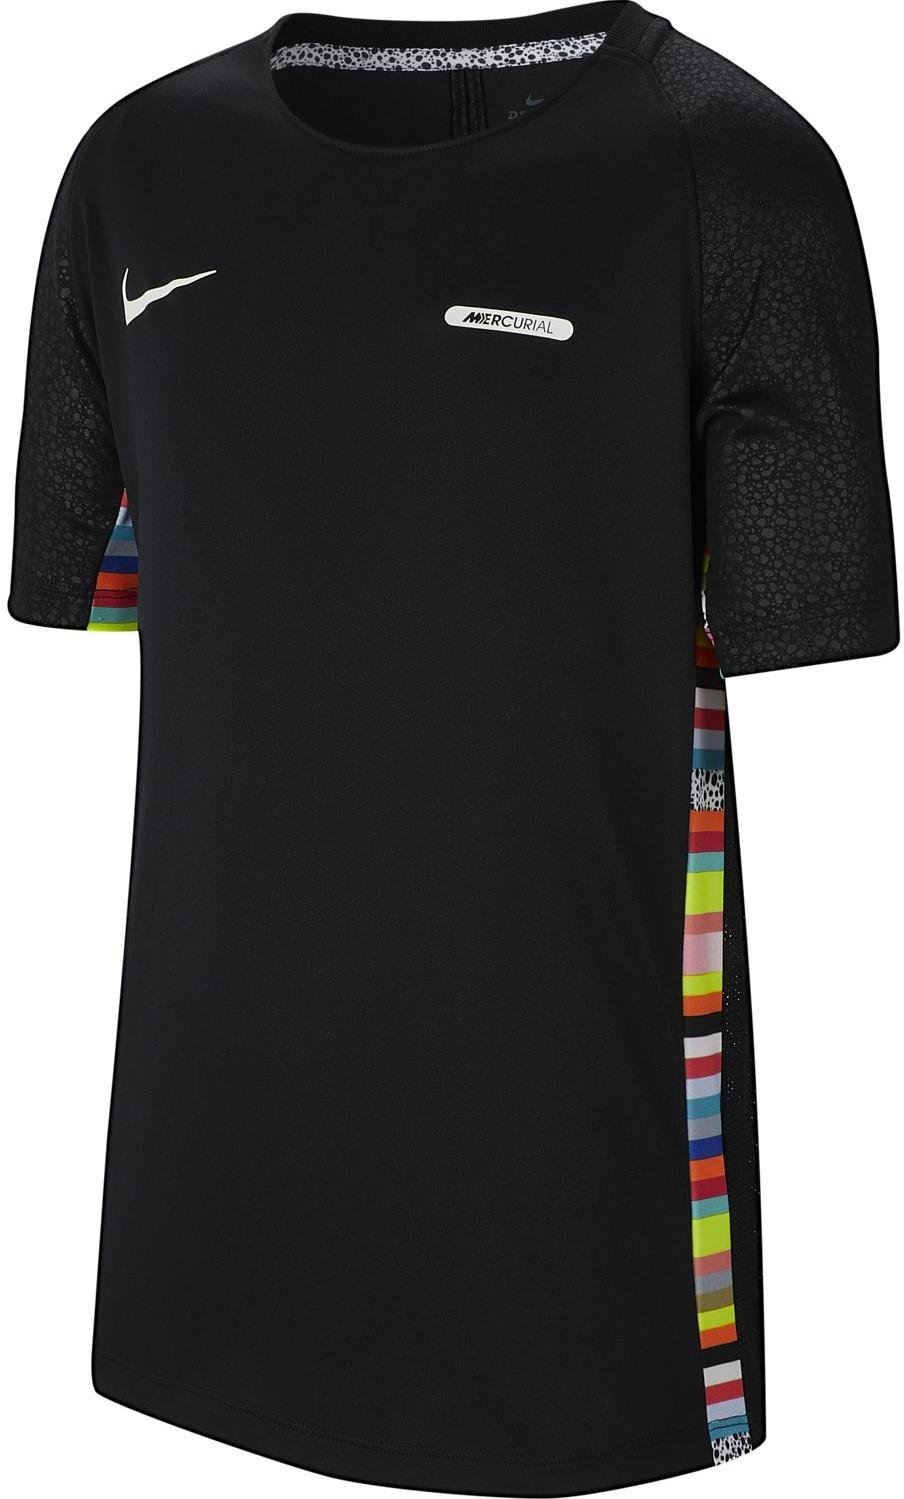 Serrado pecho Alienación Camiseta Nike dri-fit tee t-shirt kids - 11teamsports.es